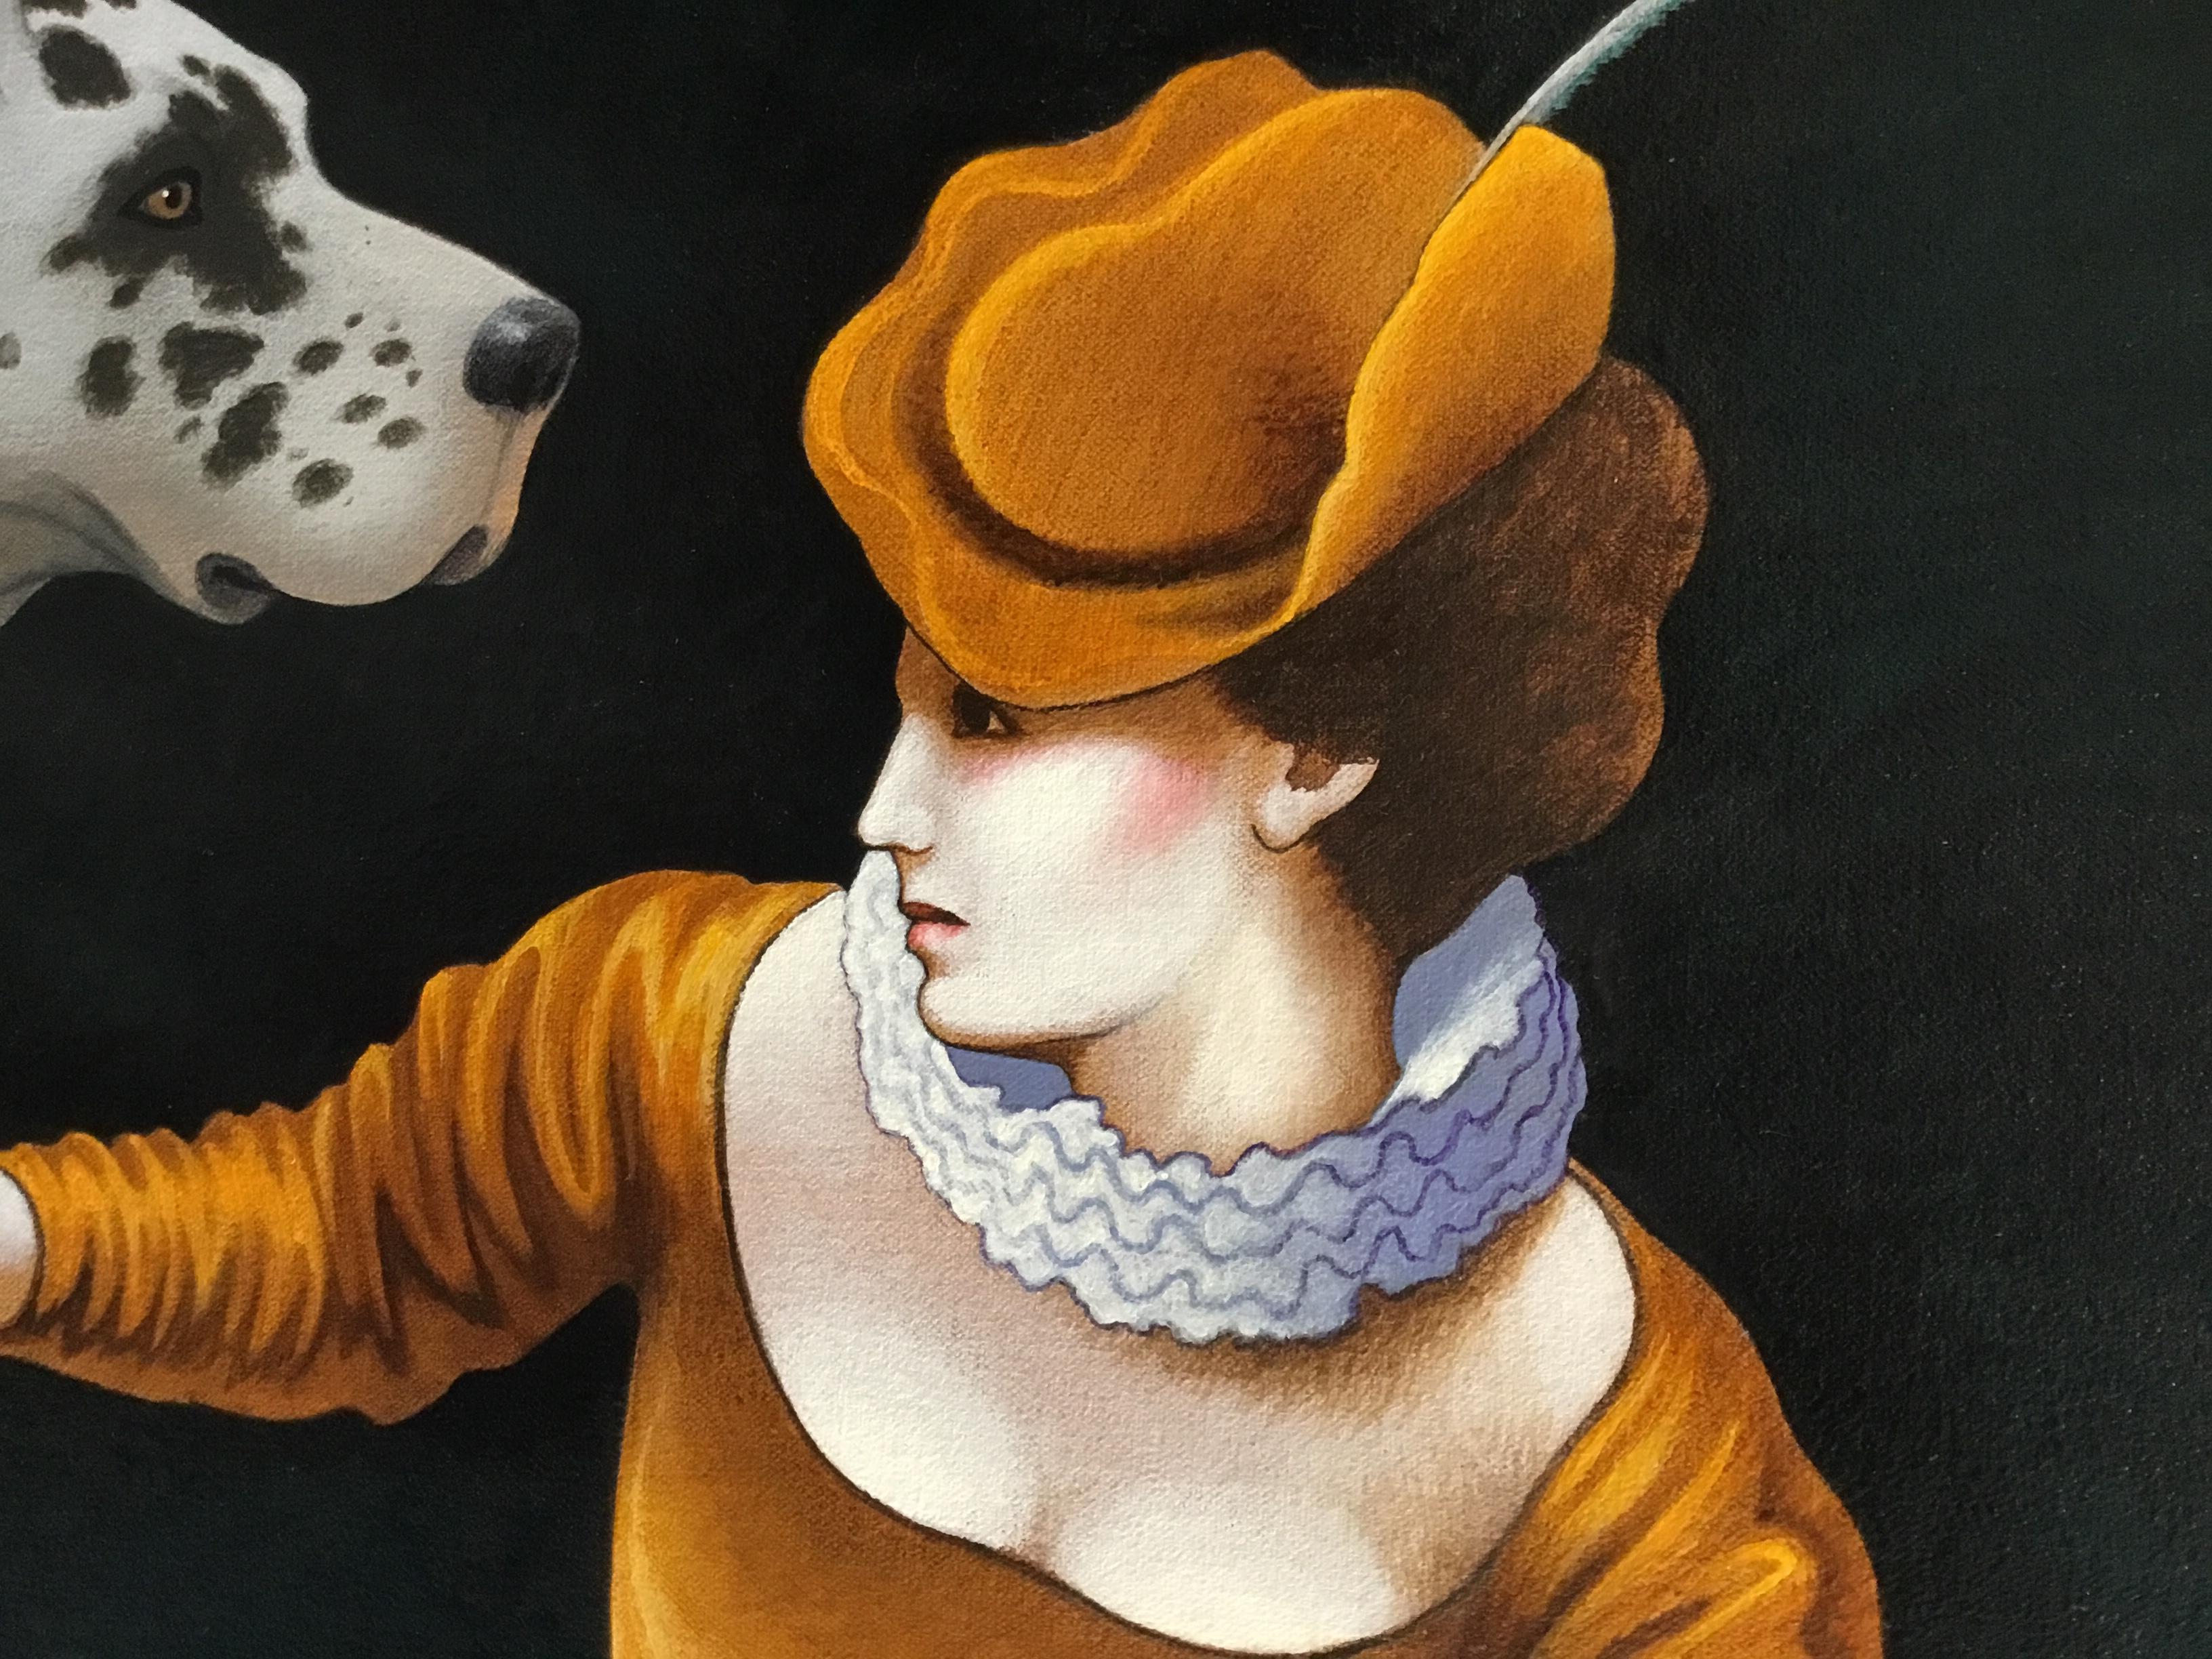 Liaisons VII
Originalgemälde von Lynn Curlee
Eines von acht Gemälden, die auf französischen Kupferstichen aus dem 17.
Jedes Bild zeigt einen Mann, eine Frau und einen Hund.
Herr Curlee ist Galerist und Autor bzw. Illustrator von preisgekrönten